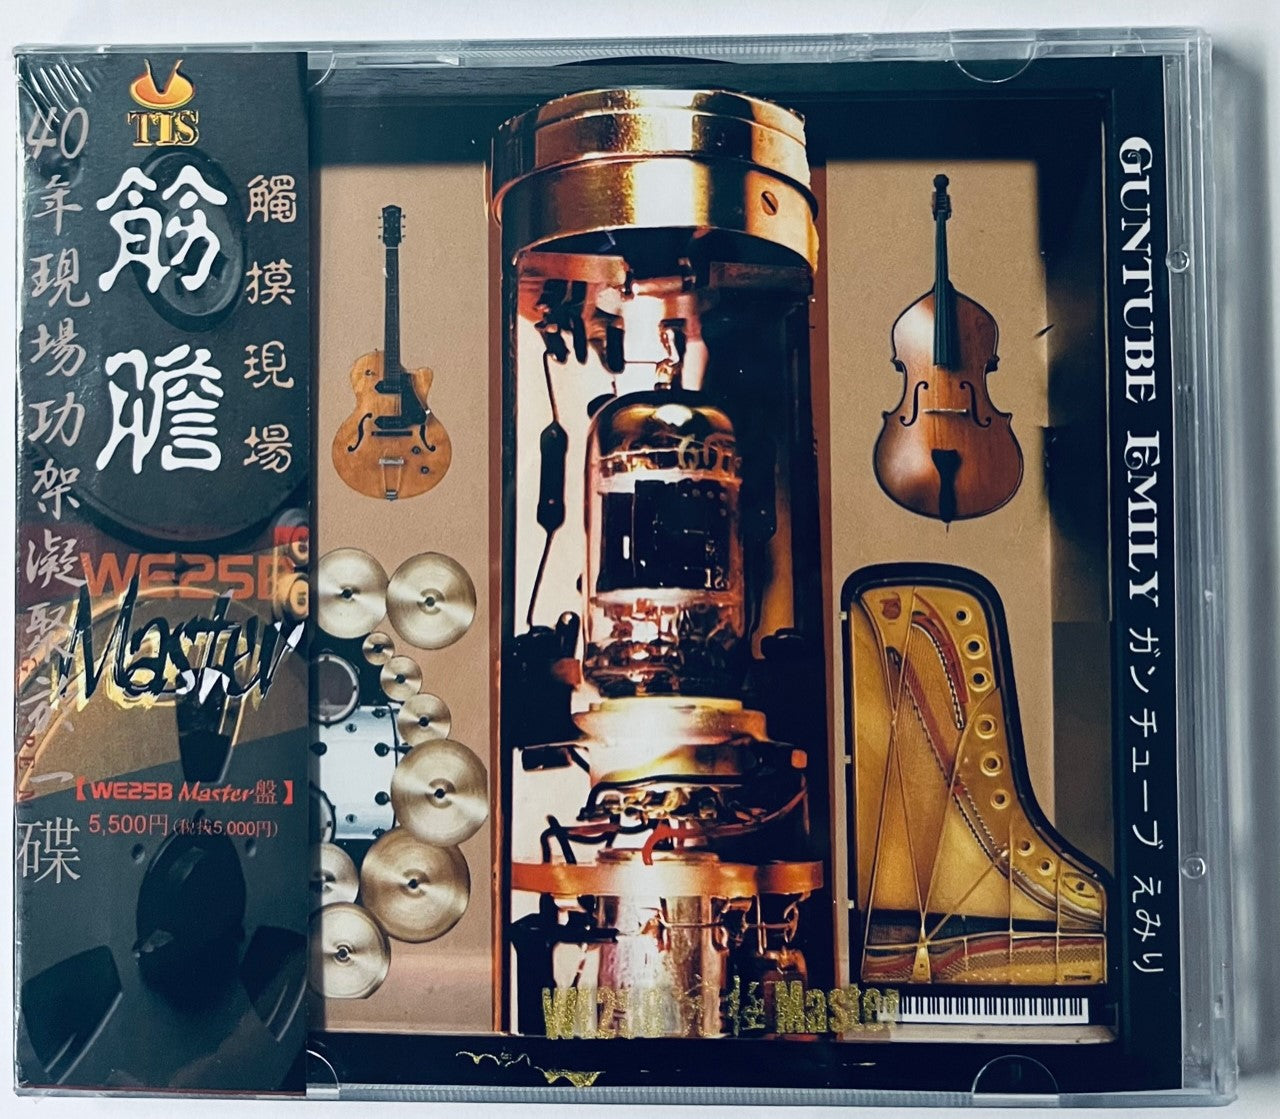 GUNTUBE EMILY - 筋膽 TIS LABEL (CD)